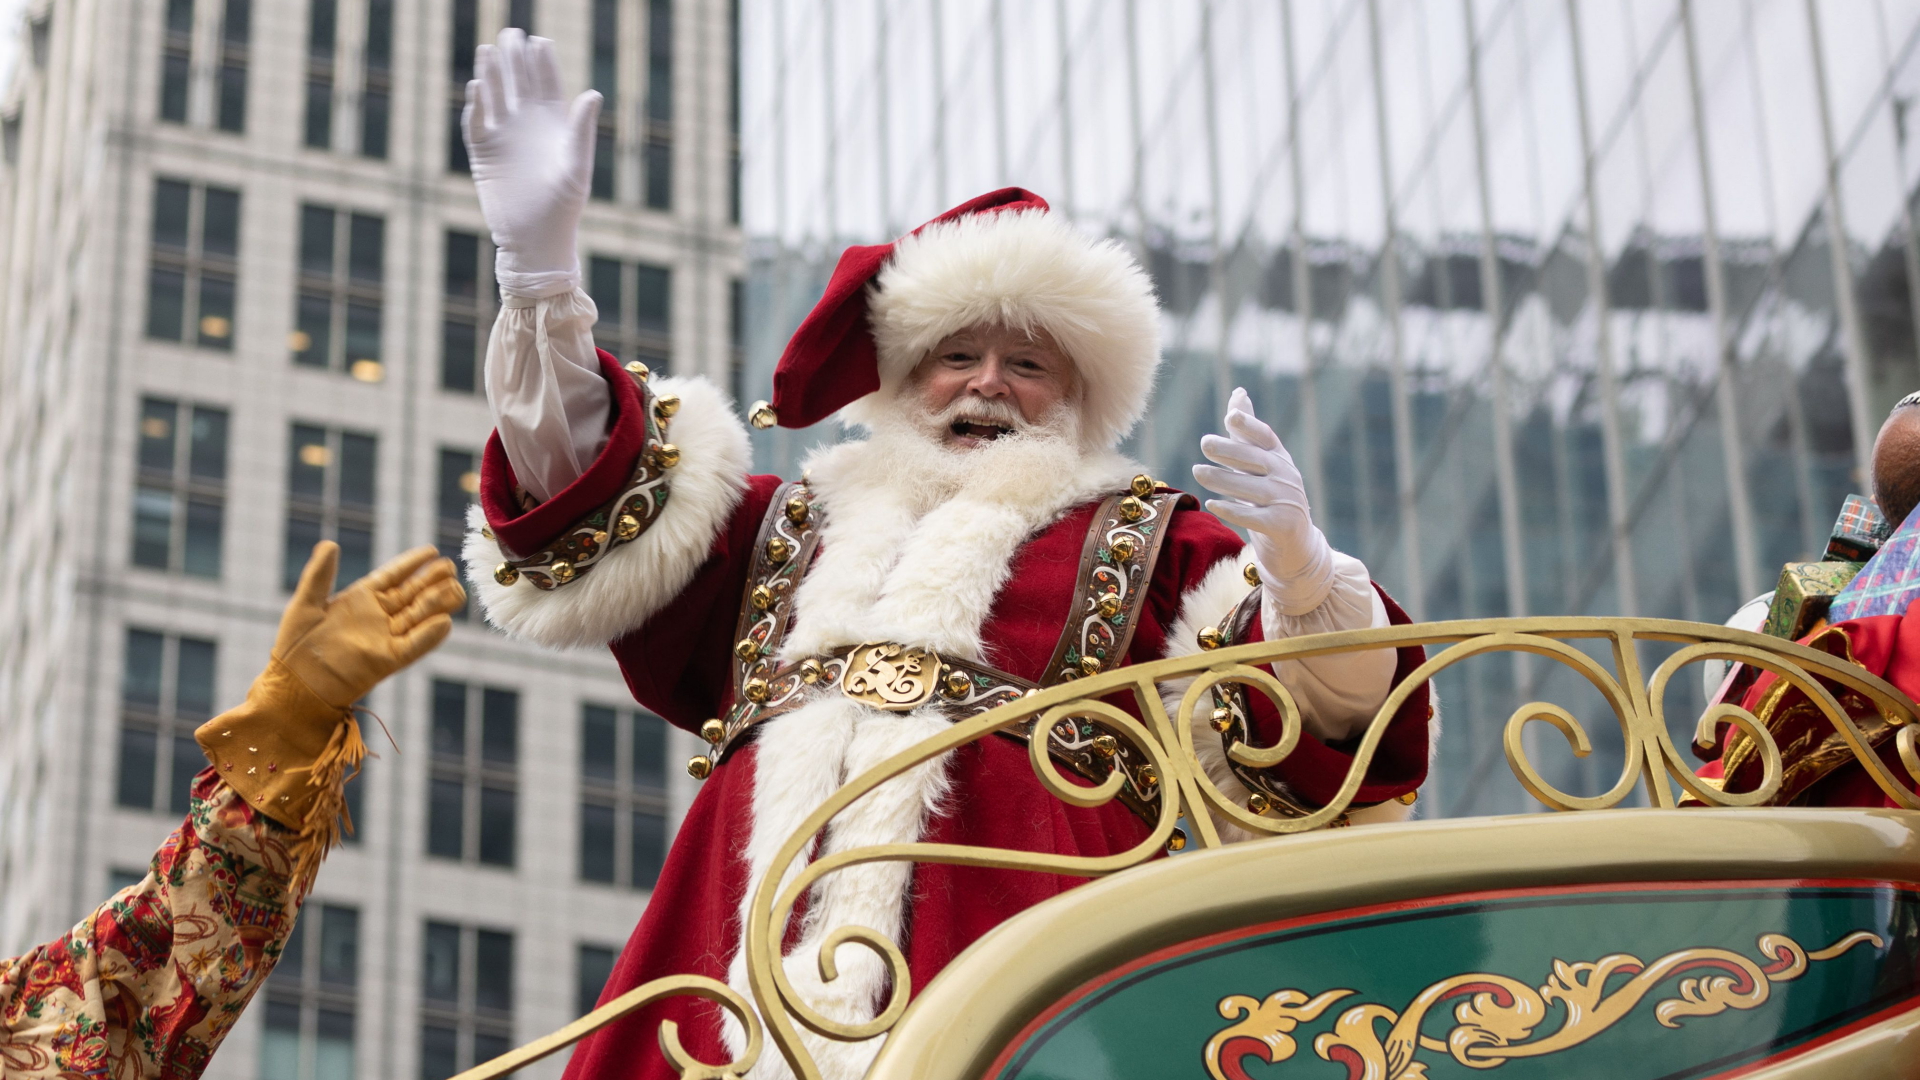  Weihnachtsmann-Darsteller in den USA | AFP